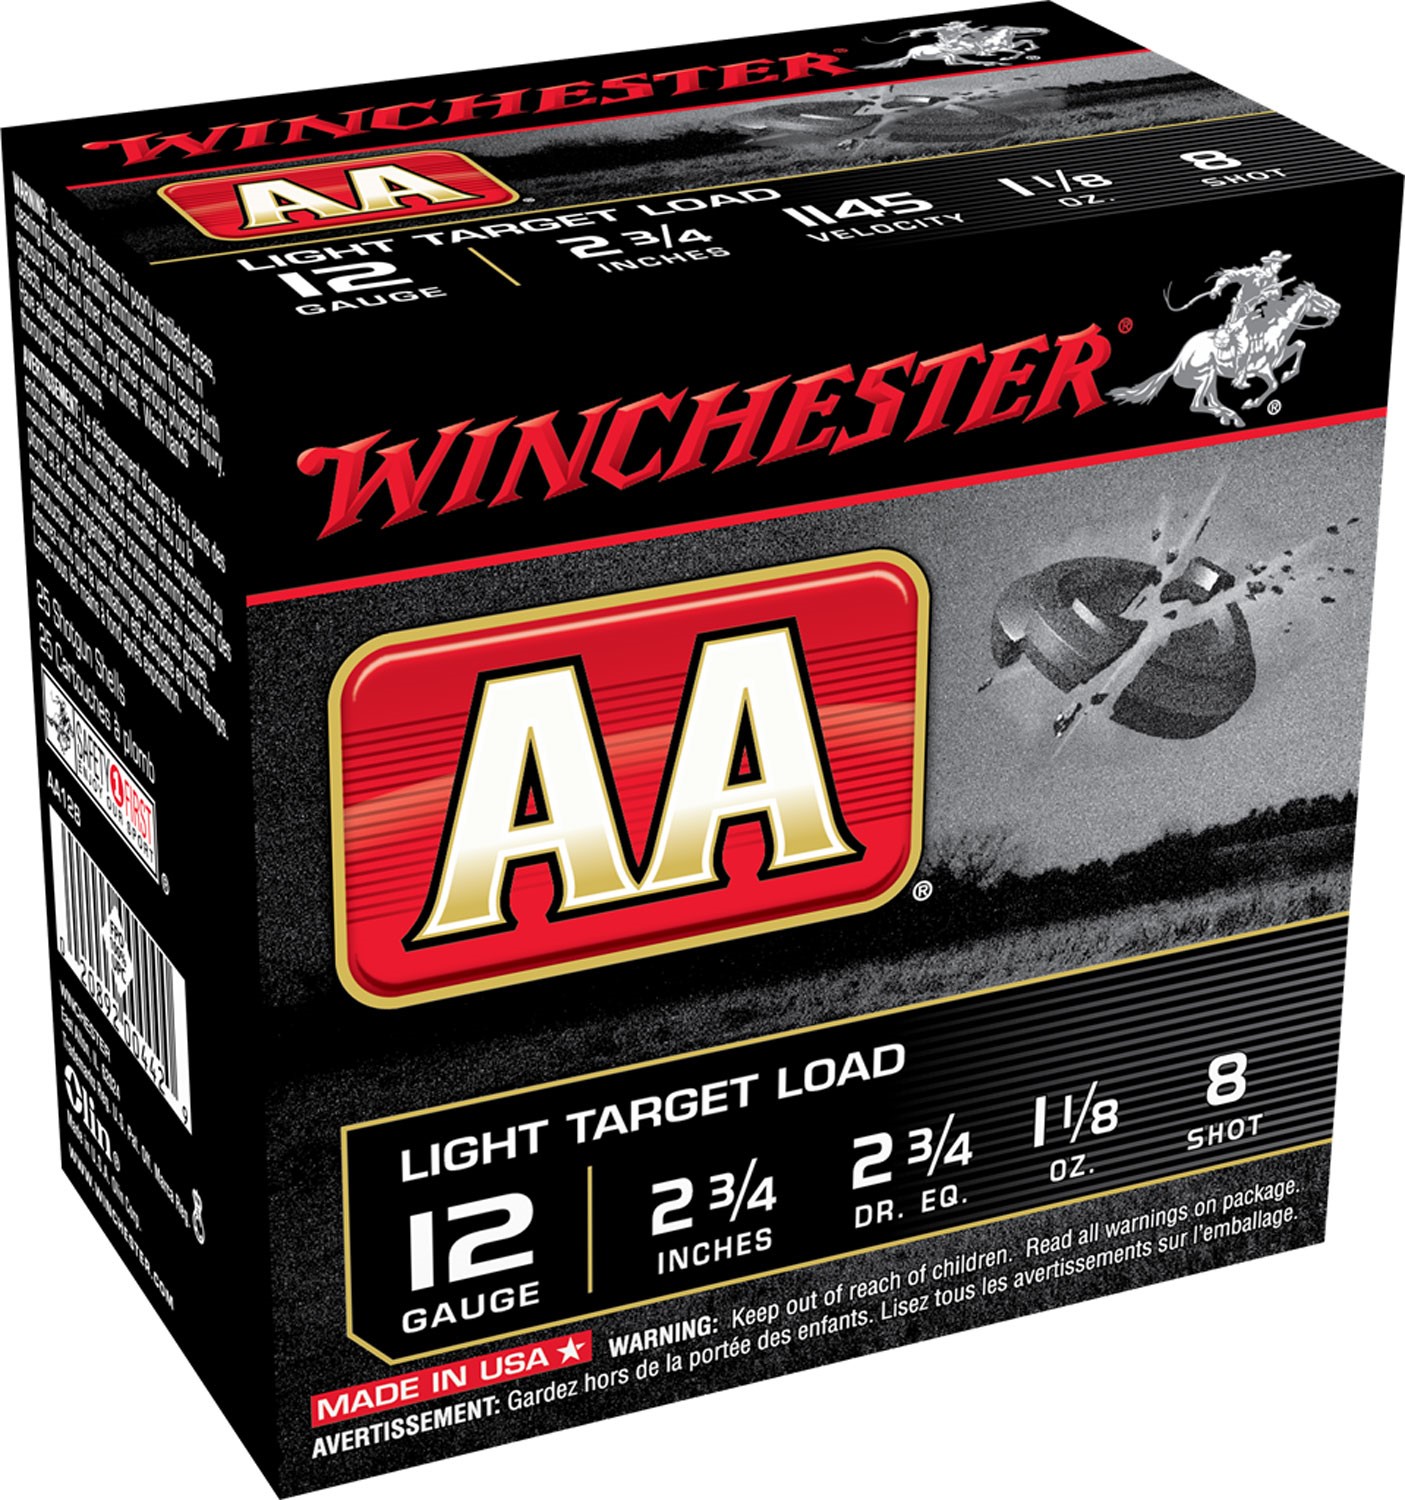 WINCHESTER #AA128 LIGHT TARGET 12G 2.75", 1 1/8 OUNCE SHOT, 8#, 25RDS